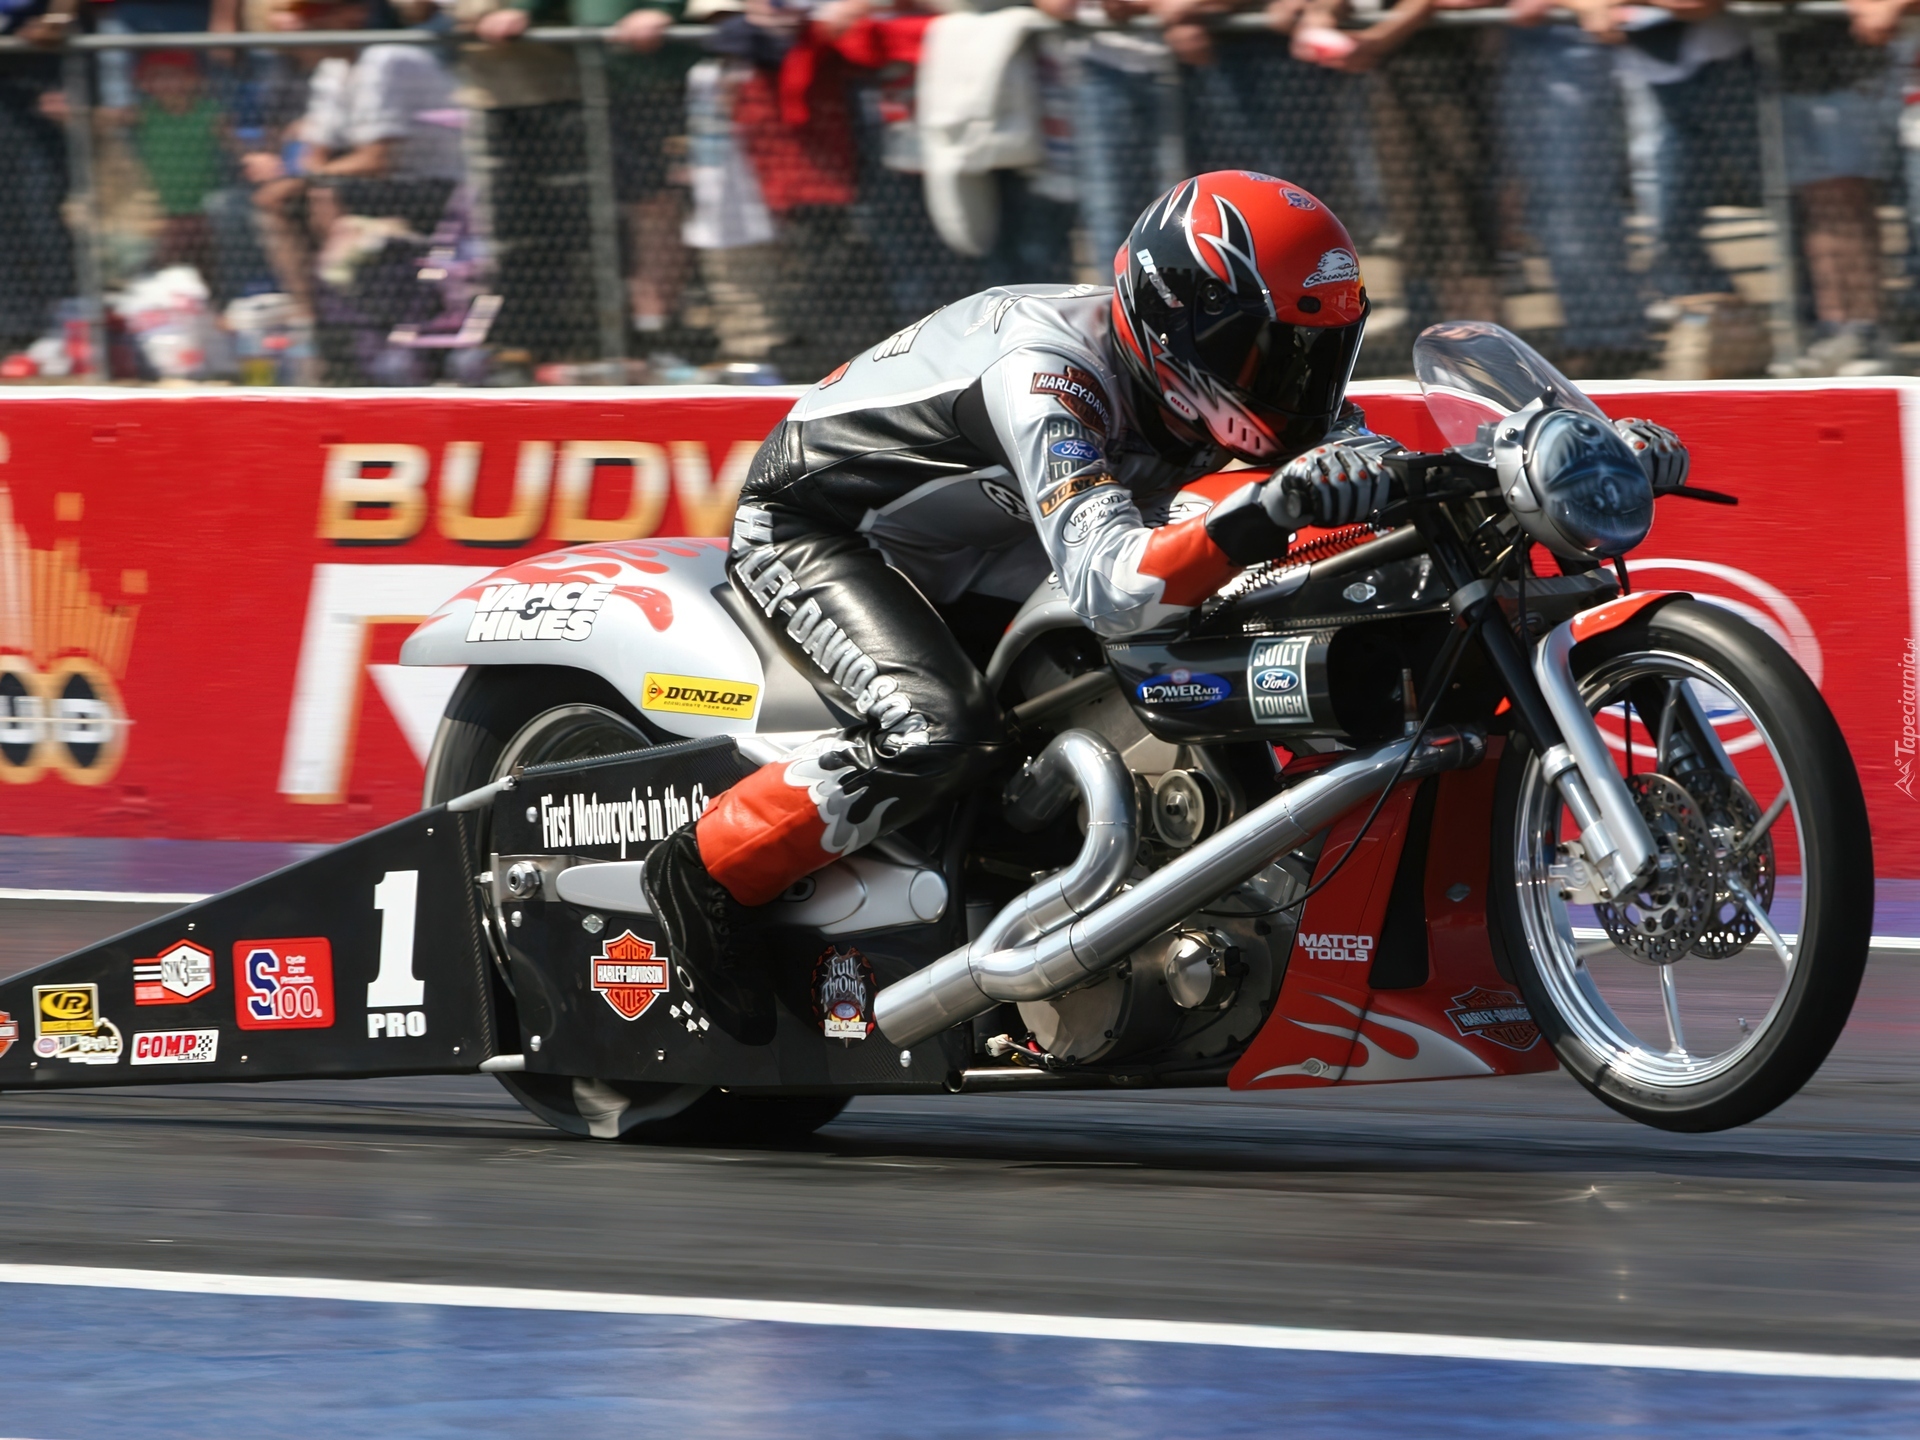 Harley Davidson V-Rod Muscle Drag, Wyścig